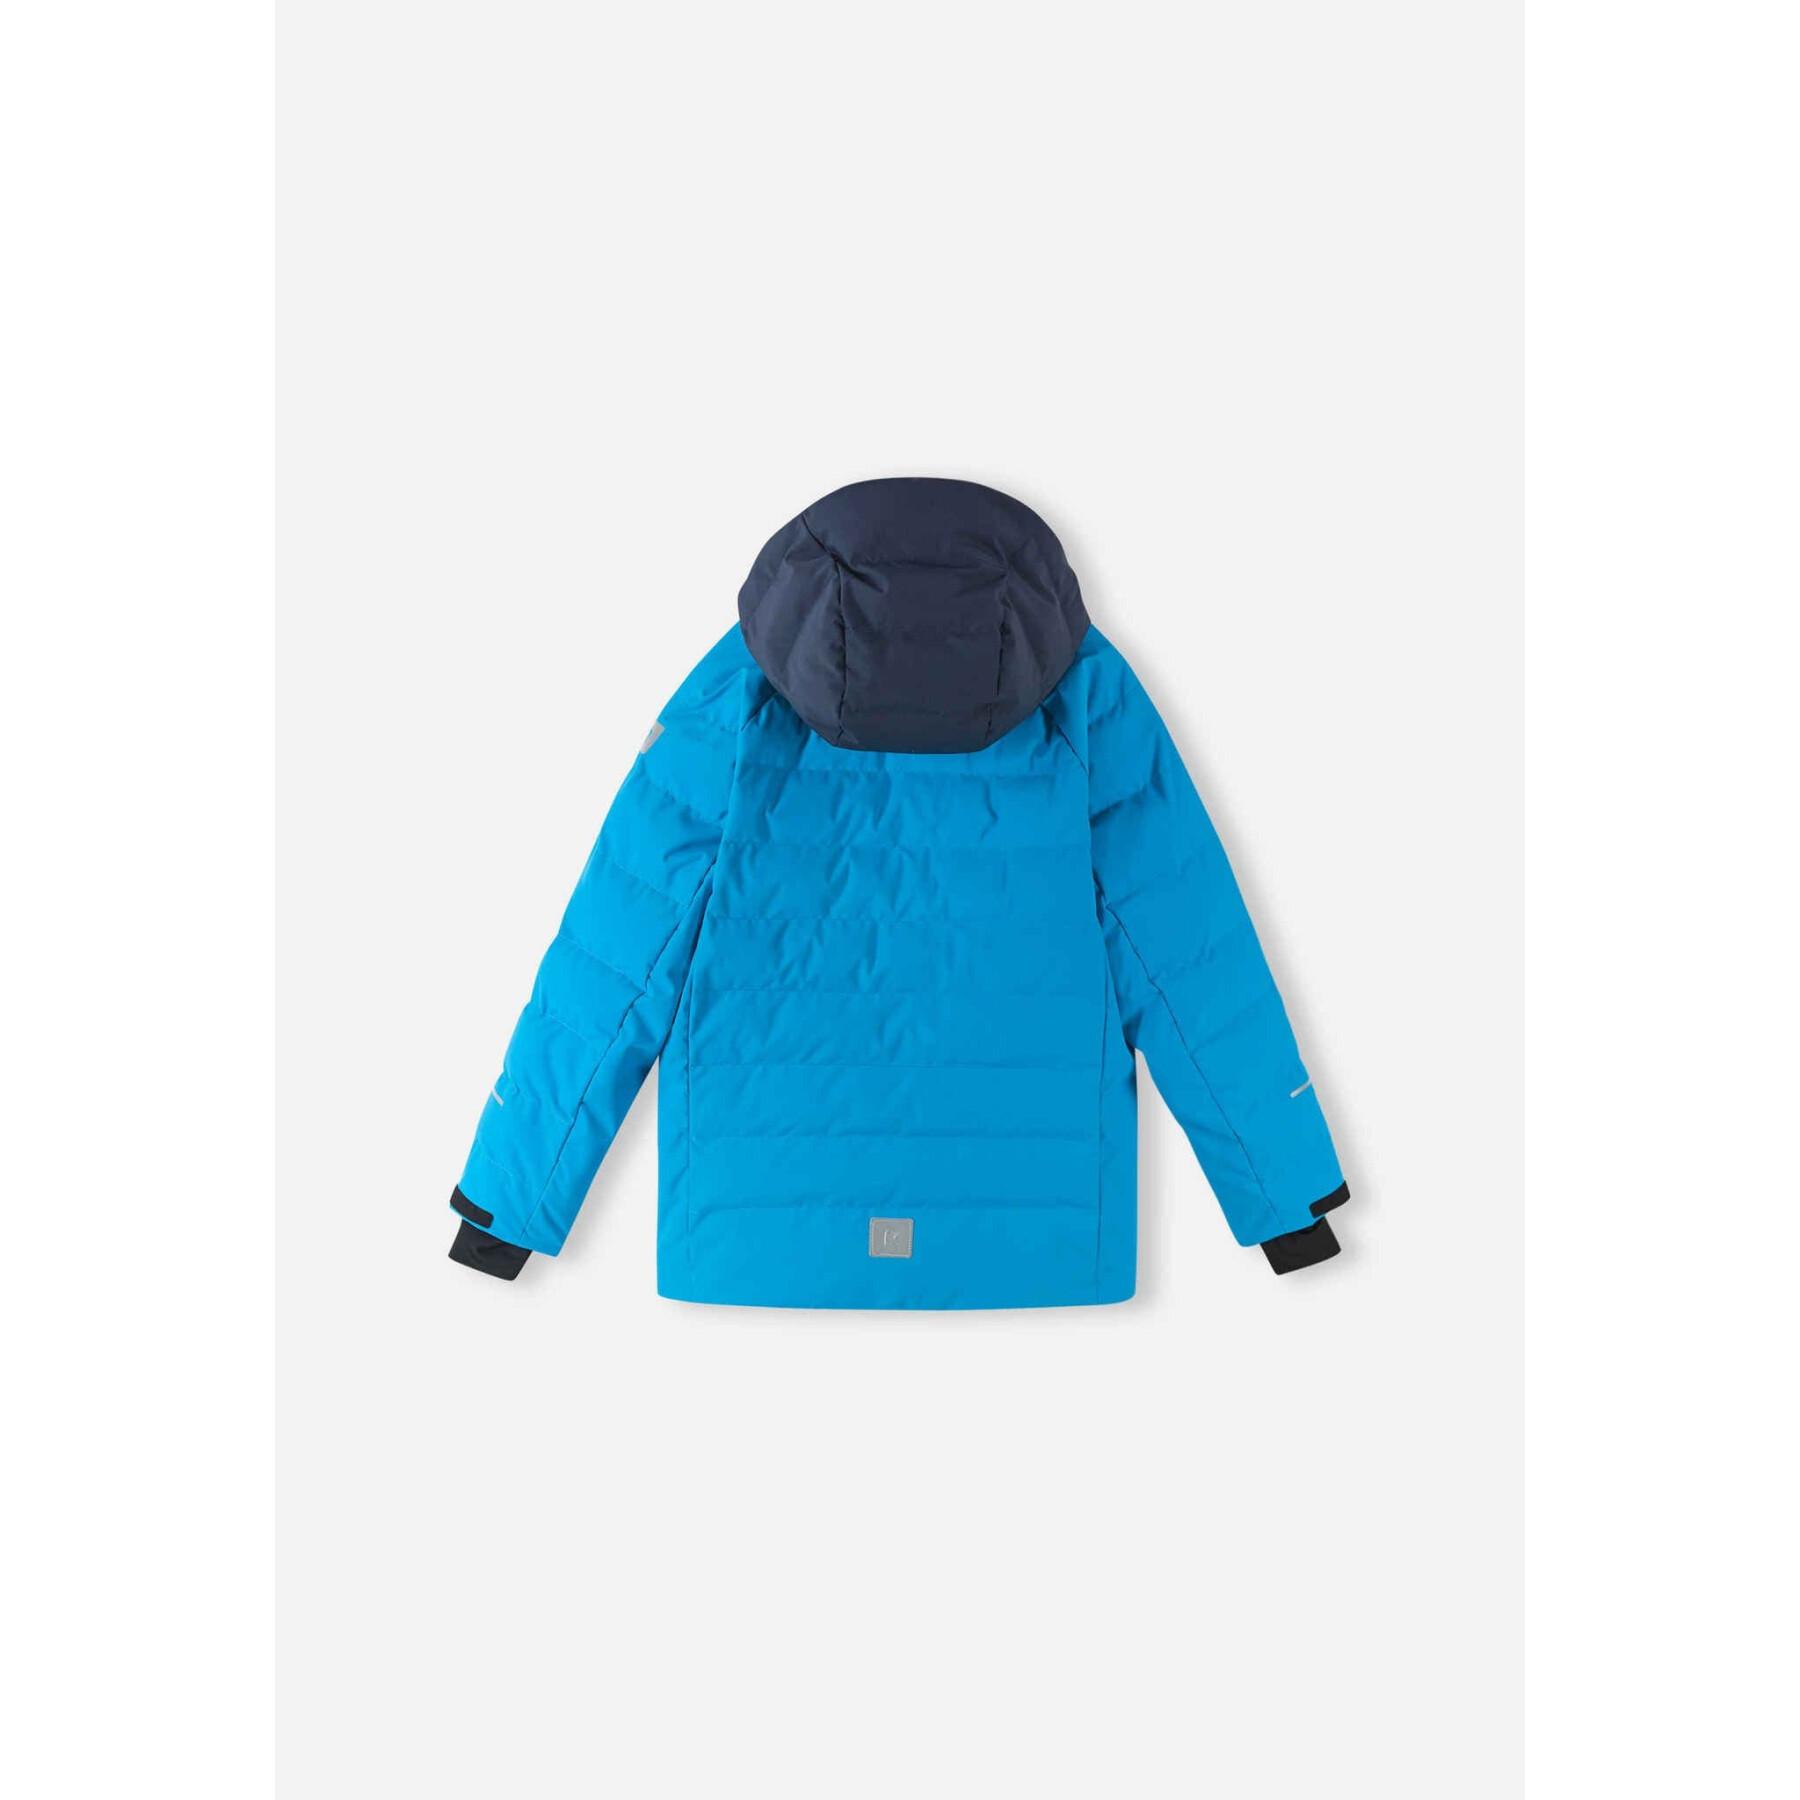 Children's ski jacket Reima Kuosku